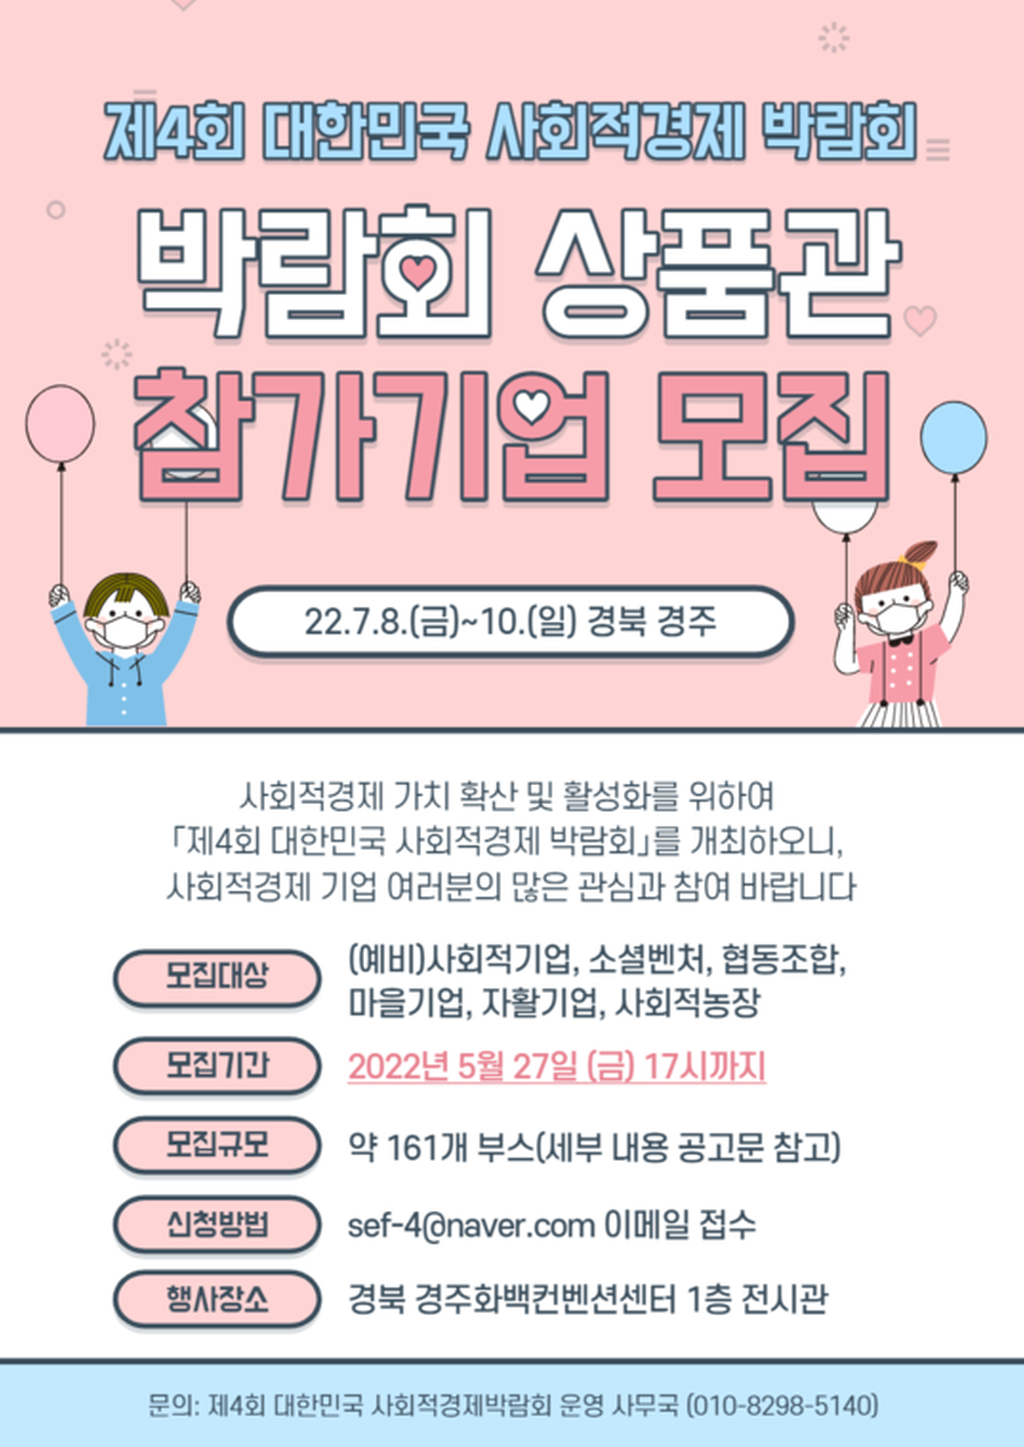 제4화 대한민국 사회적경제 박람회 참가기업 모집